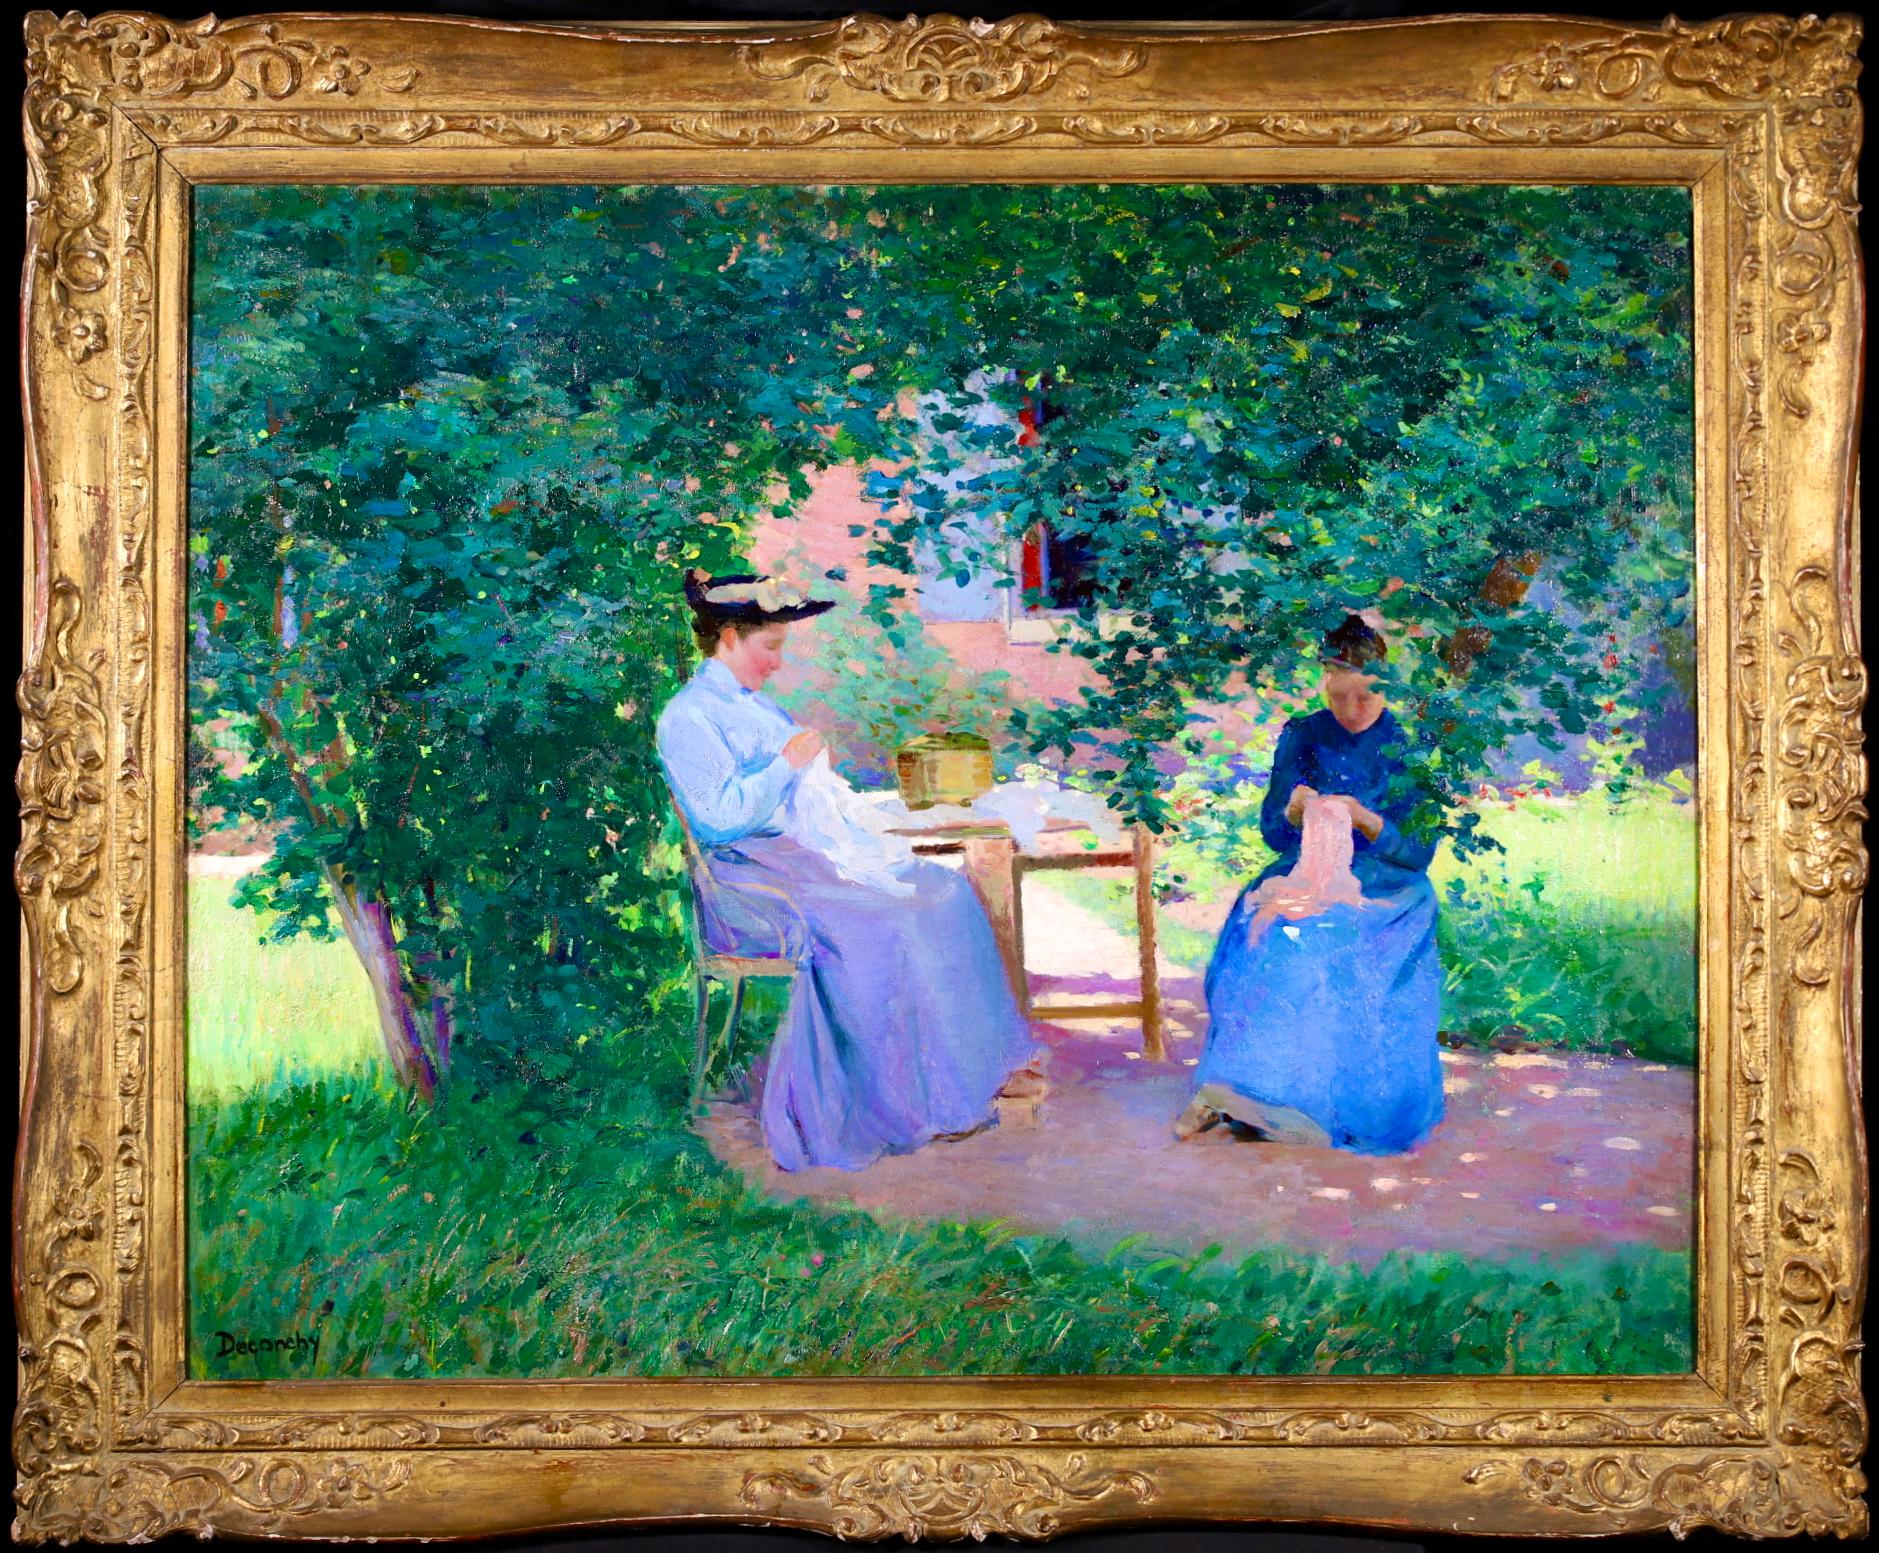 Une superbe huile sur toile de grande taille, datant de 1900, du peintre français Ferdinand Deconchy. L'œuvre représente deux couturières vêtues de blouses et de jupes bleues, assises dans un jardin à l'ombre des arbres, en train de coudre. Deonchy